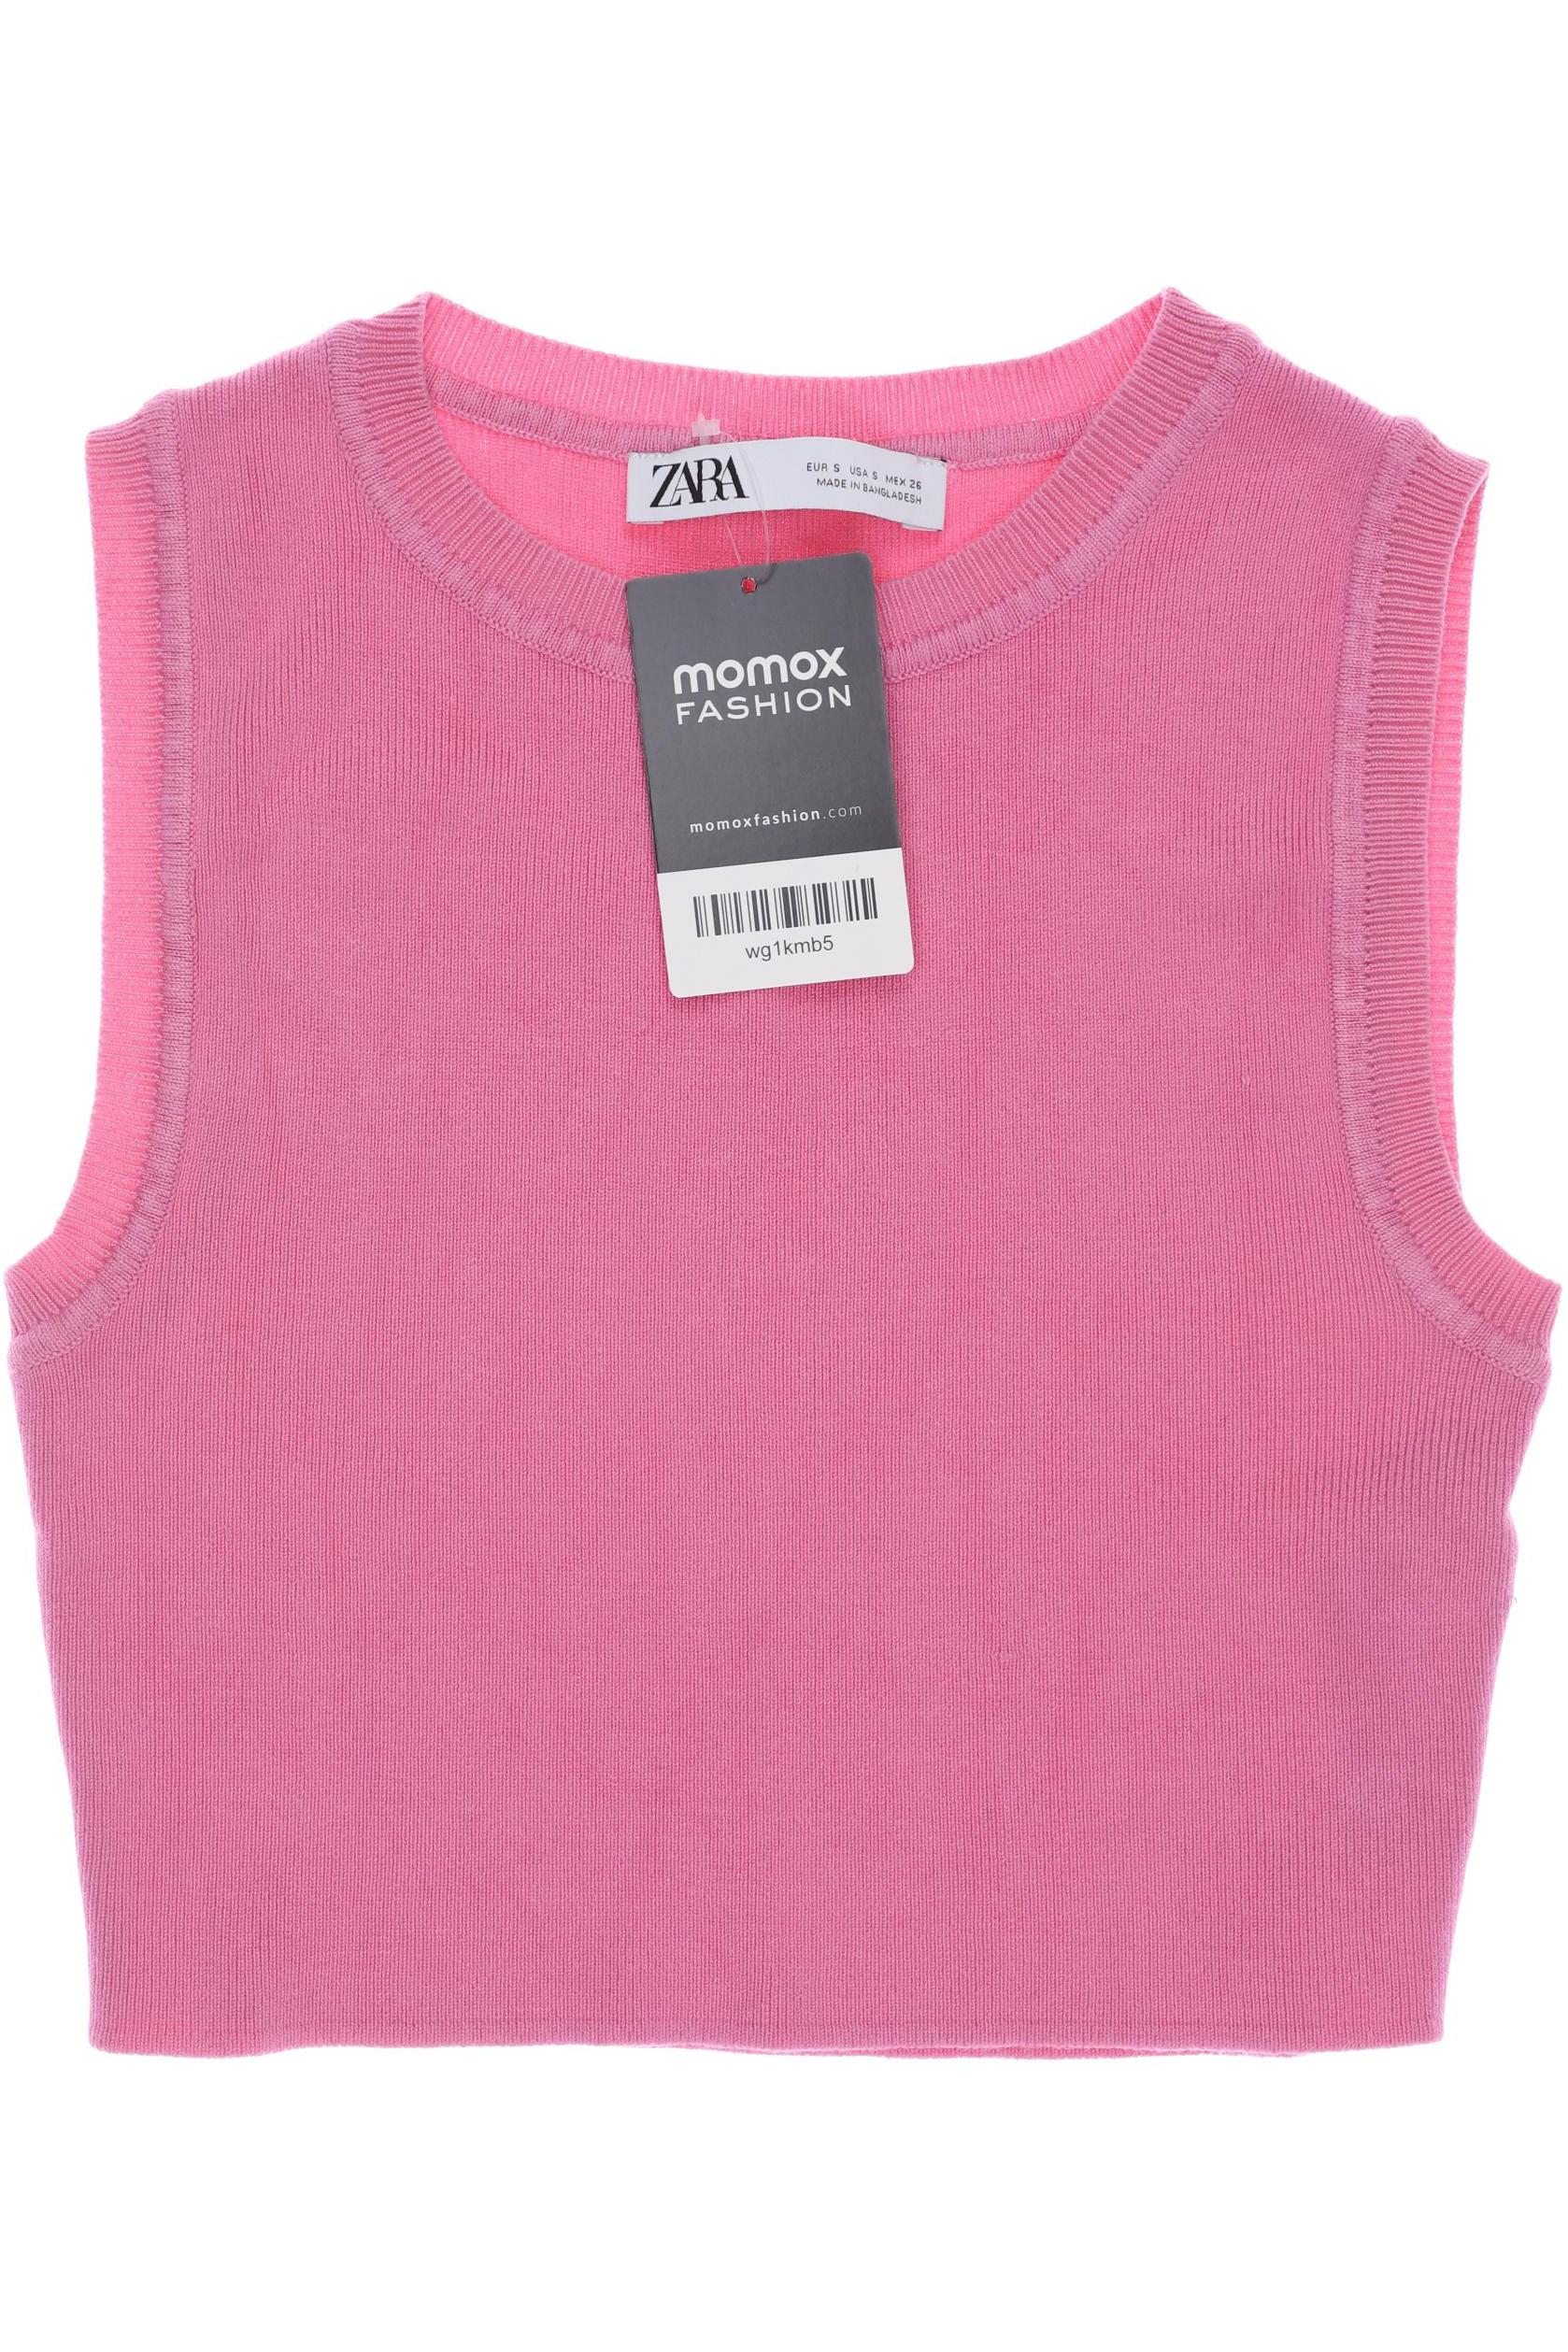 ZARA Damen Pullover, pink von ZARA